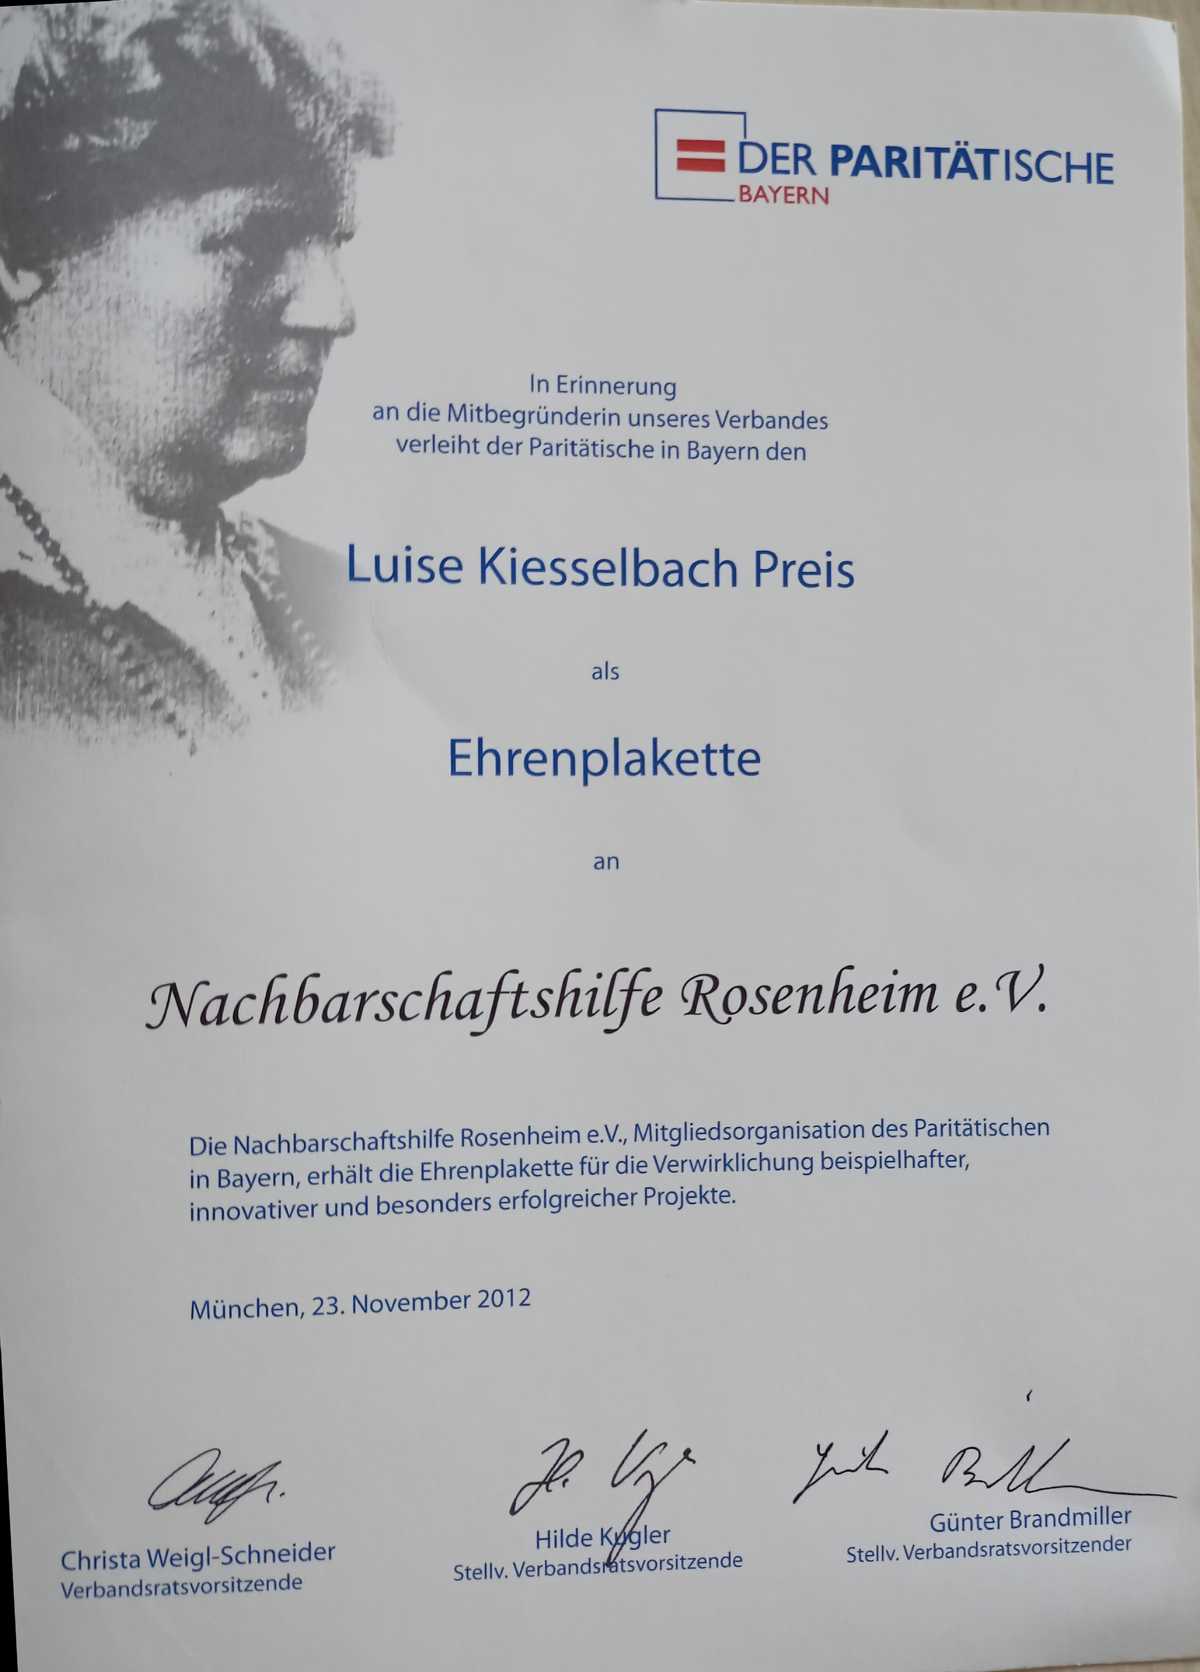 Luise Kiesselbach Preis